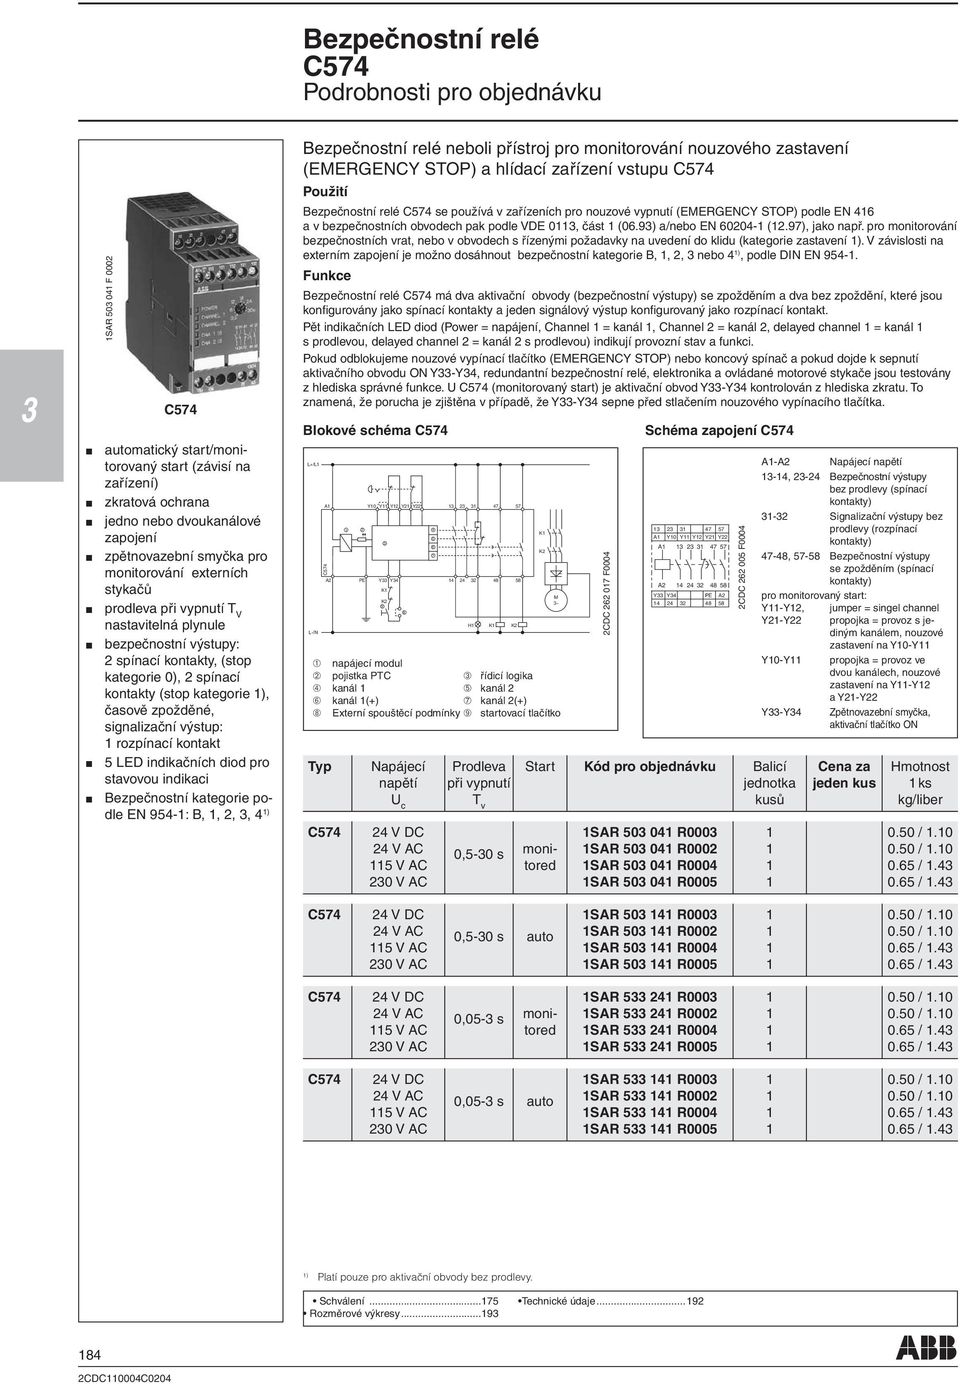 signalizační výstup: rozpínací kontakt LED indikačních diod pro stavovou indikaci Bezpečnostní kategorie podle EN 94-: B,,,, 4 ) Bezpečnostní relé neboli přístroj pro monitorování nouzového zastavení